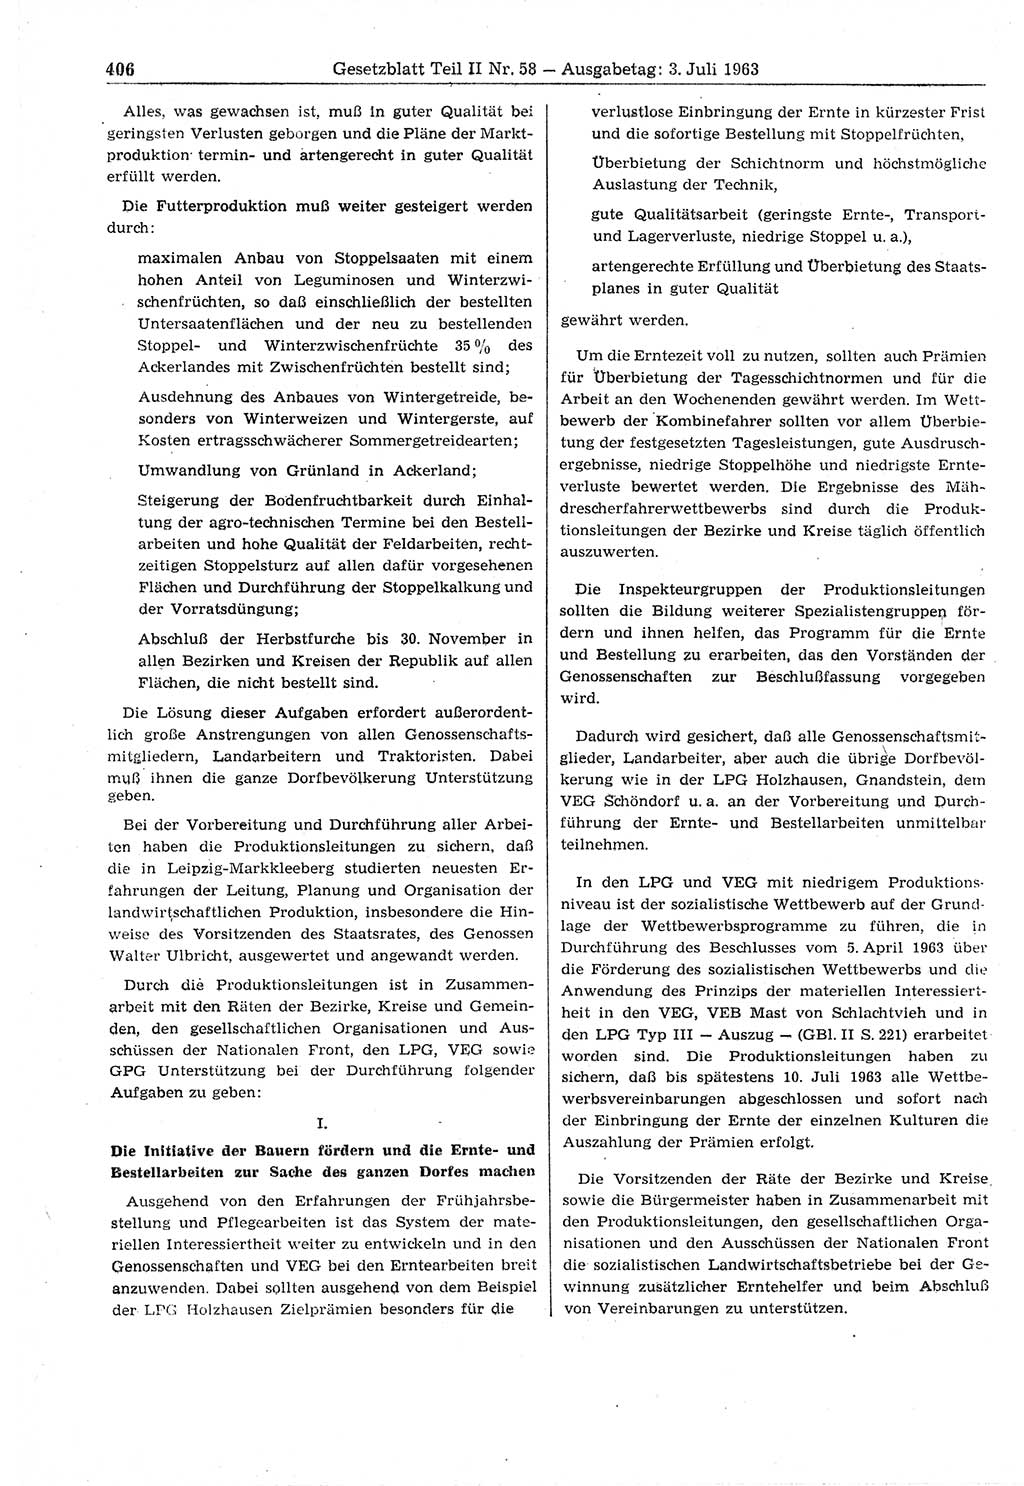 Gesetzblatt (GBl.) der Deutschen Demokratischen Republik (DDR) Teil ⅠⅠ 1963, Seite 406 (GBl. DDR ⅠⅠ 1963, S. 406)